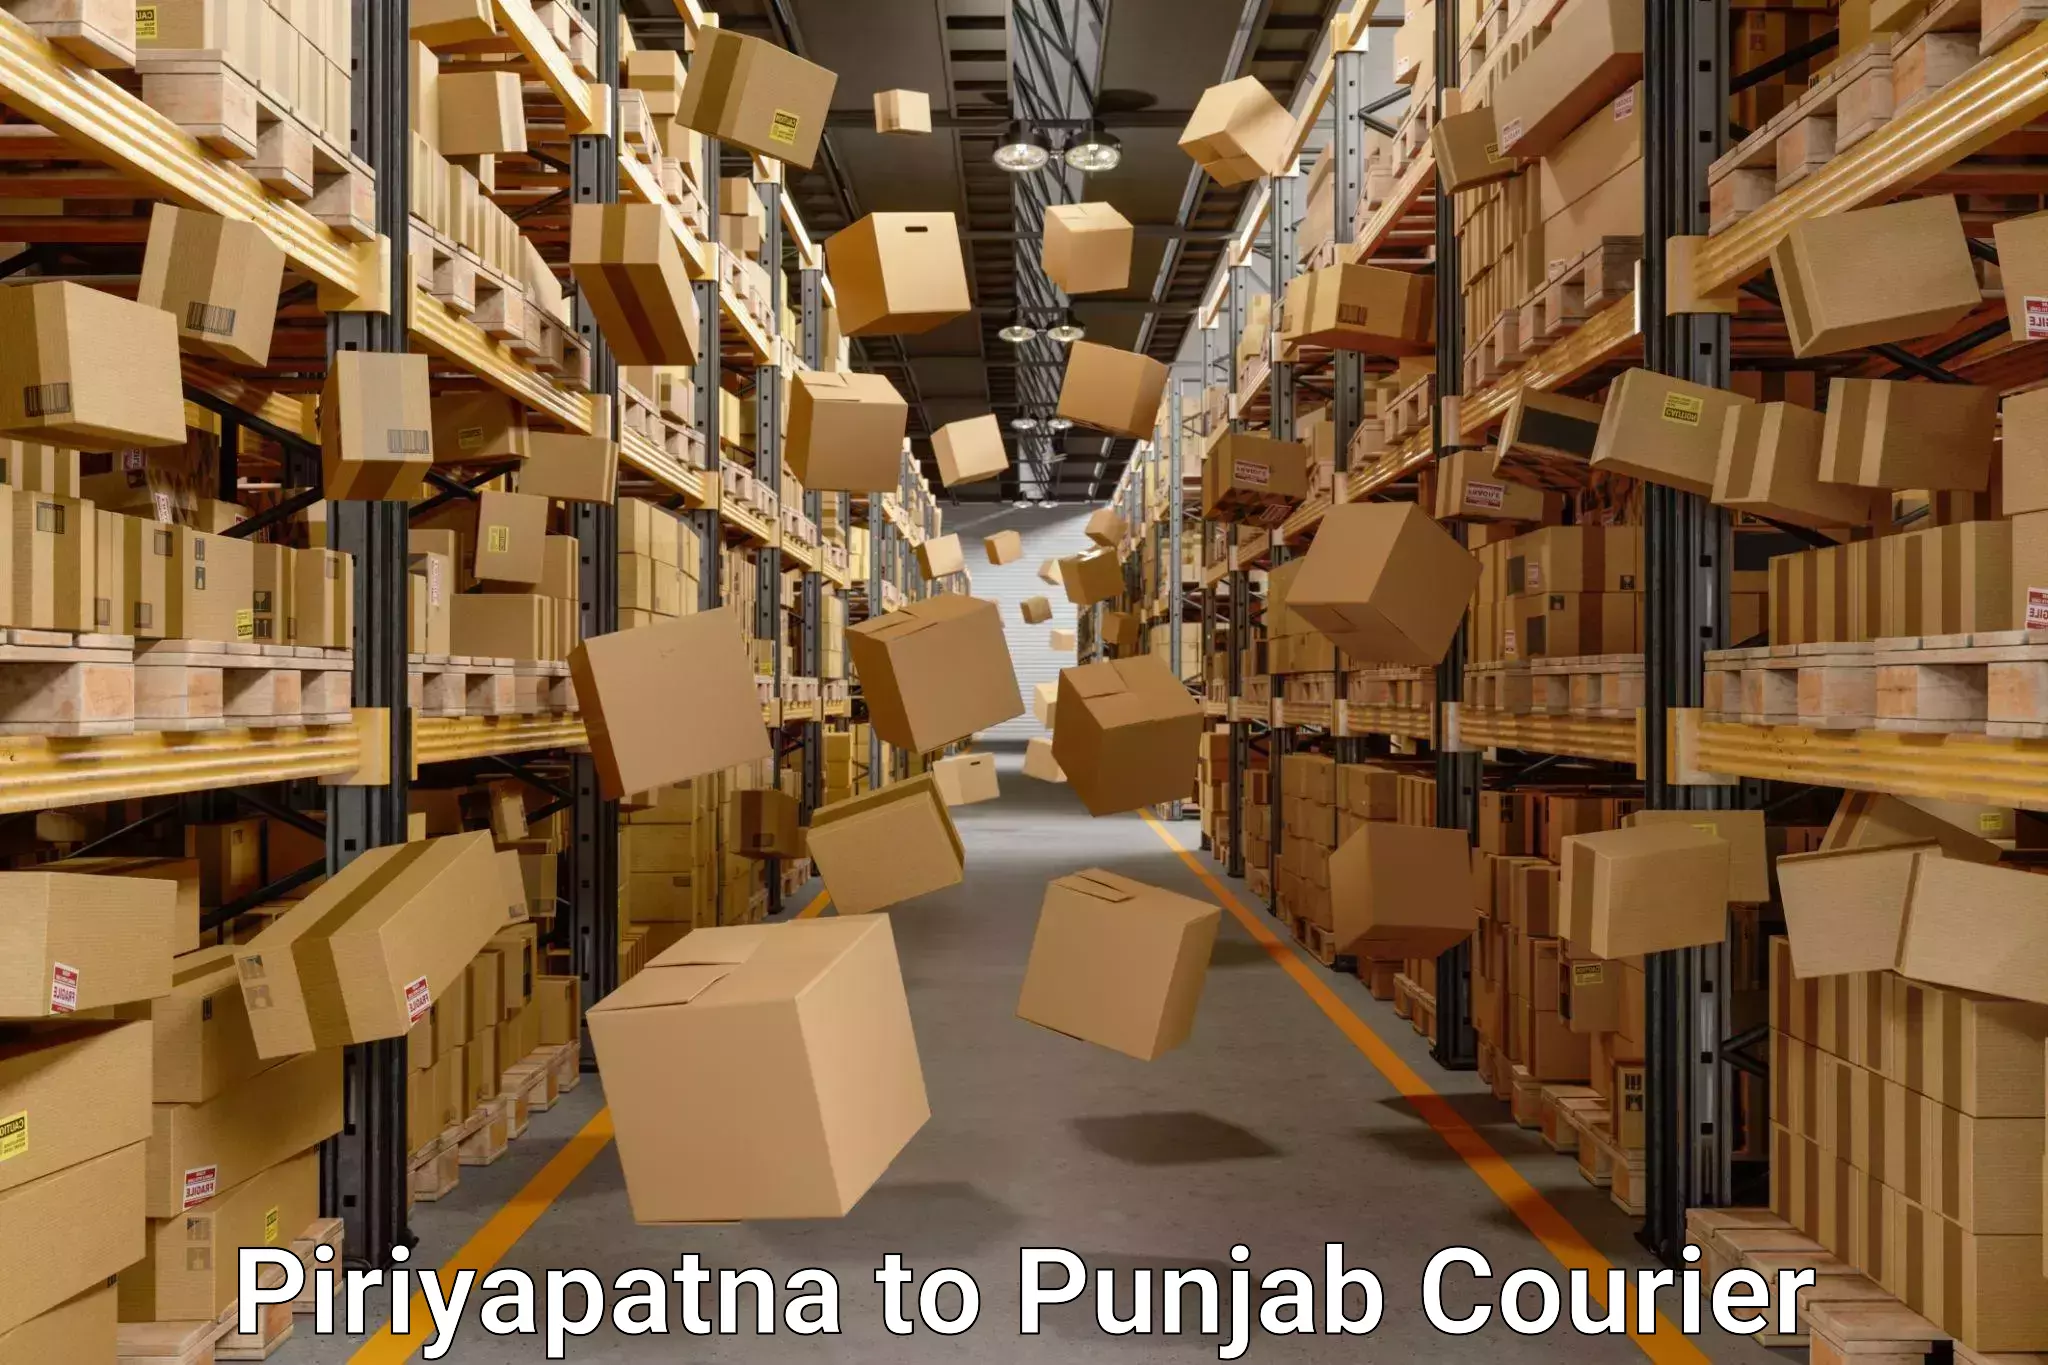 Efficient furniture movers Piriyapatna to Punjab